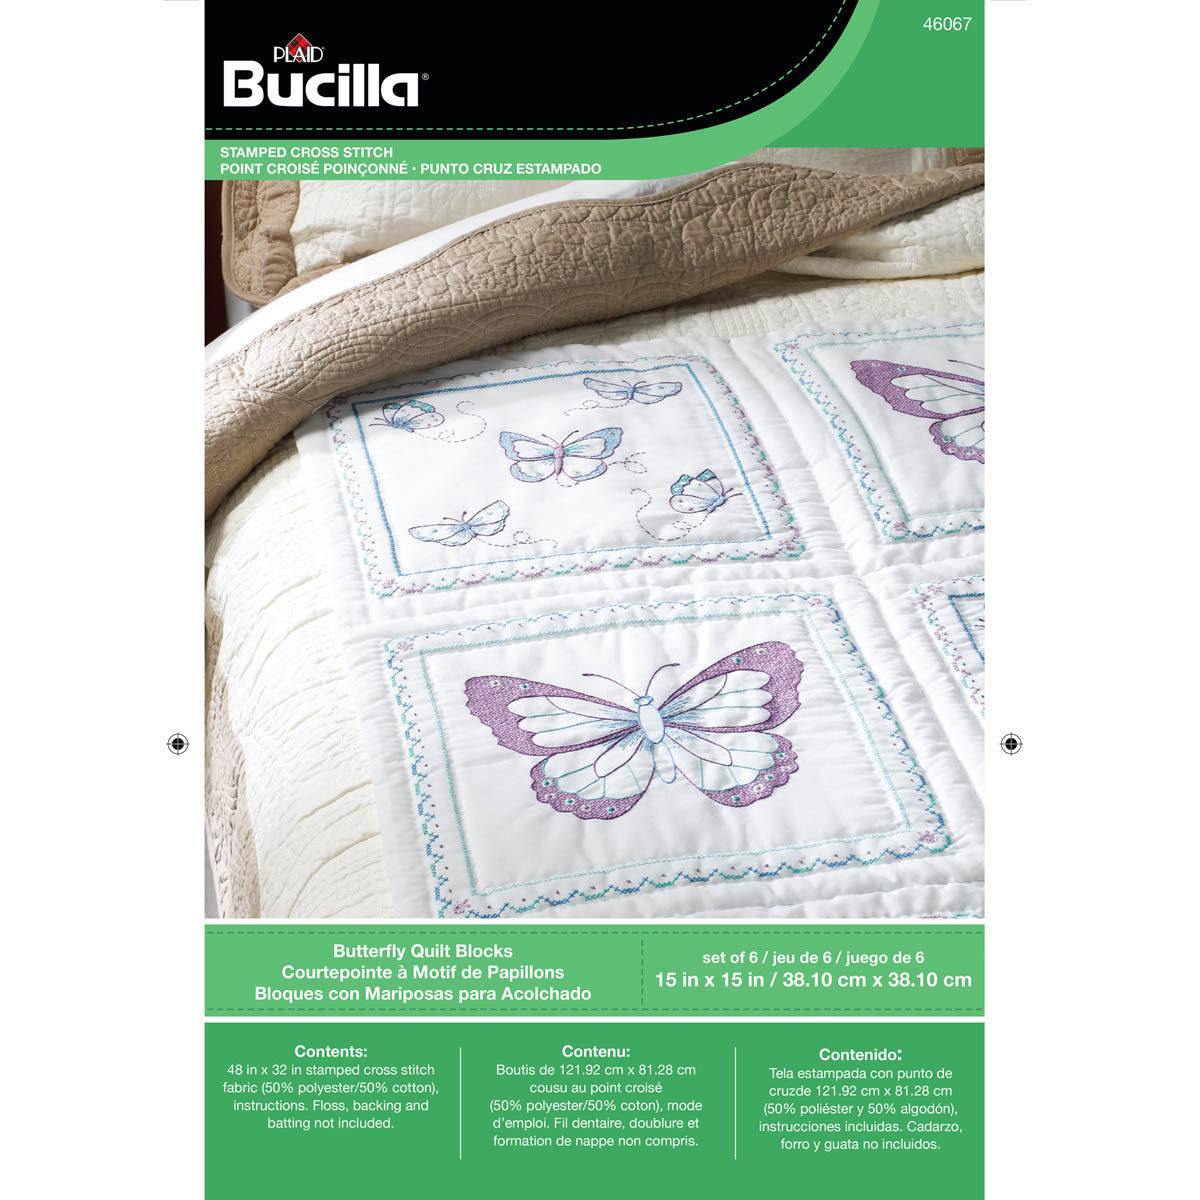 Bucilla ® Stamped Cross Stitch - Quilt Blocks - Butterfly - 46067